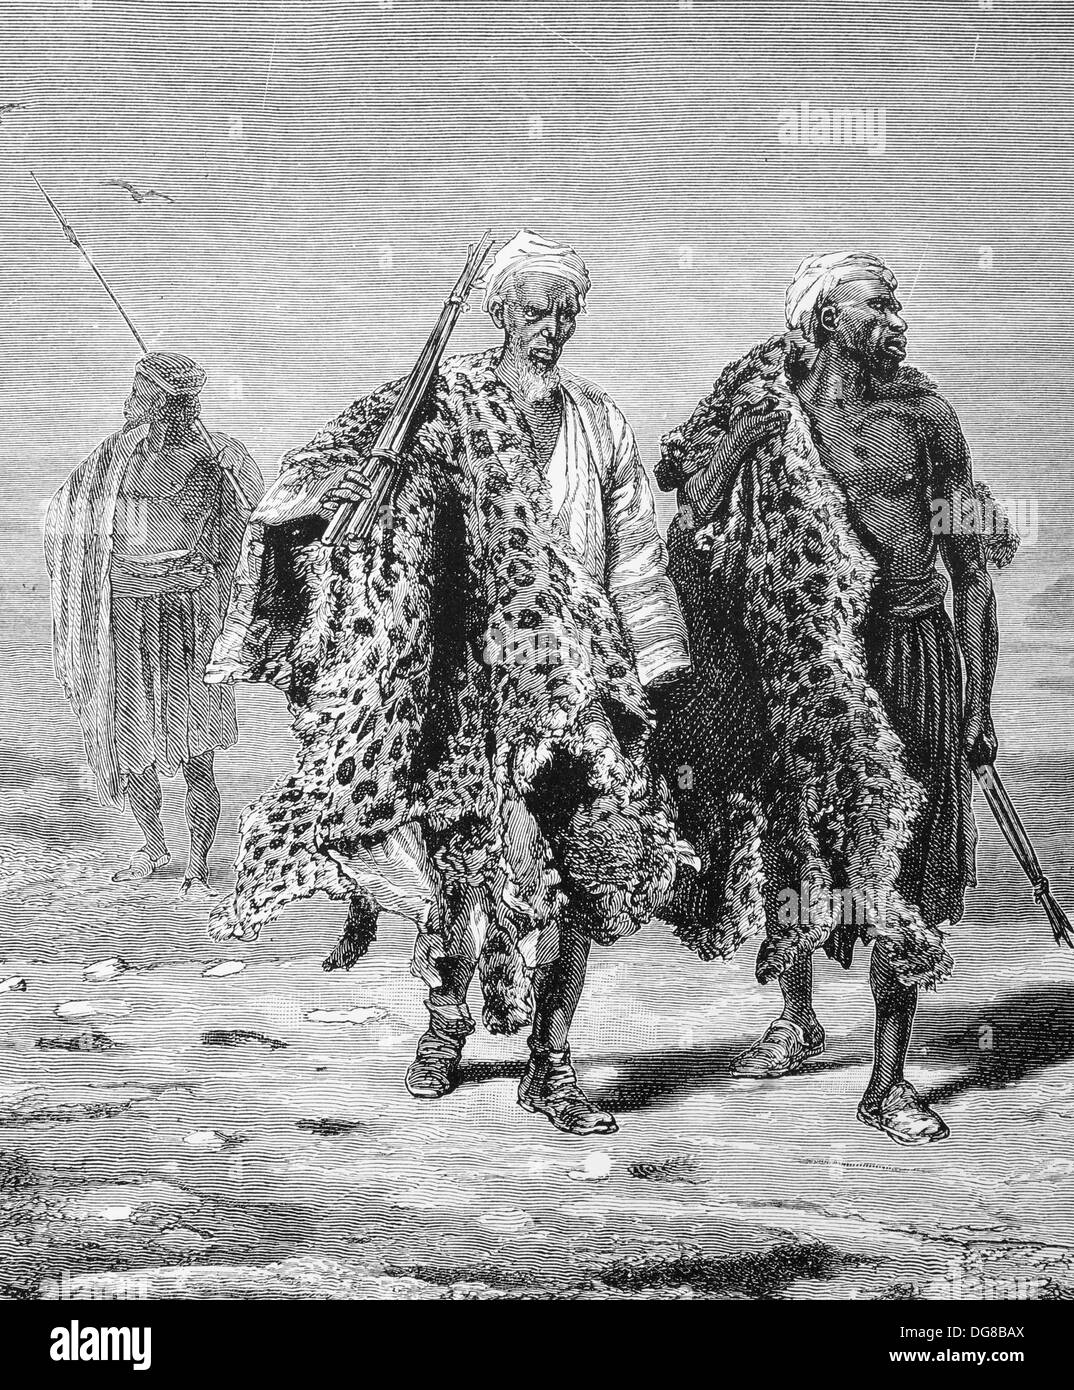 Afrika. Arabische Haut Händler, ca. 1880. Tansania. Gravur. Stockfoto